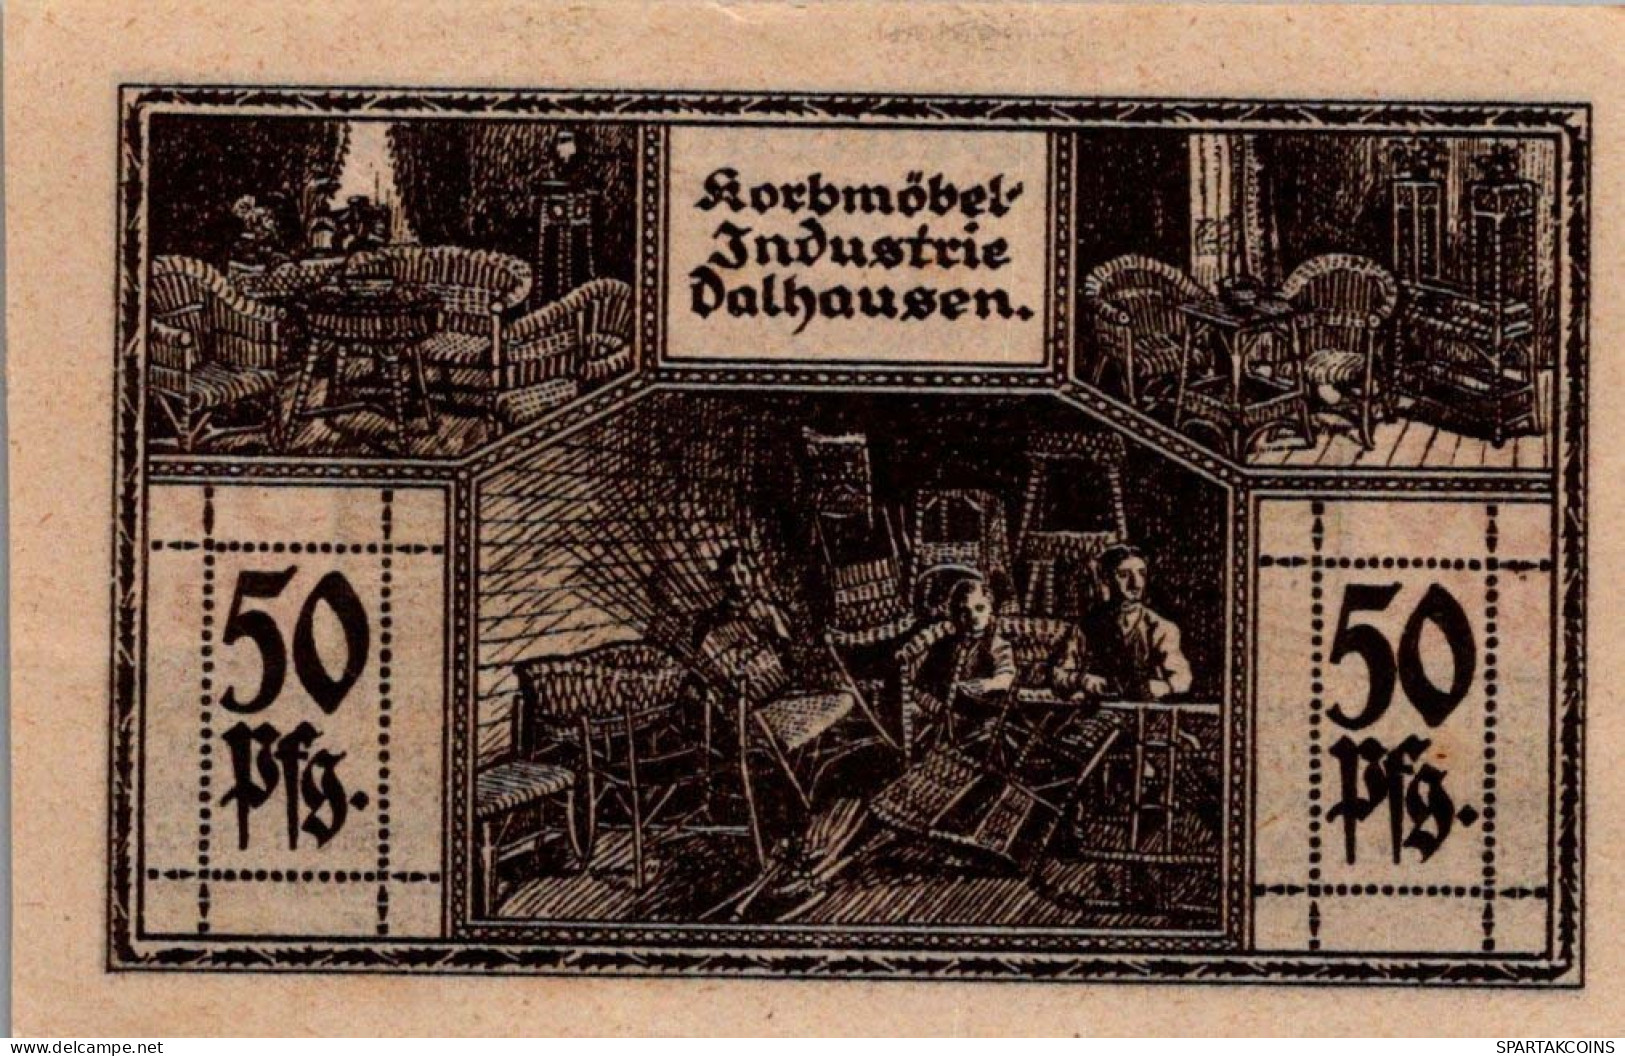 50 PFENNIG 1922 Stadt DALHAUSEN Westphalia UNC DEUTSCHLAND Notgeld #PA419 - [11] Local Banknote Issues